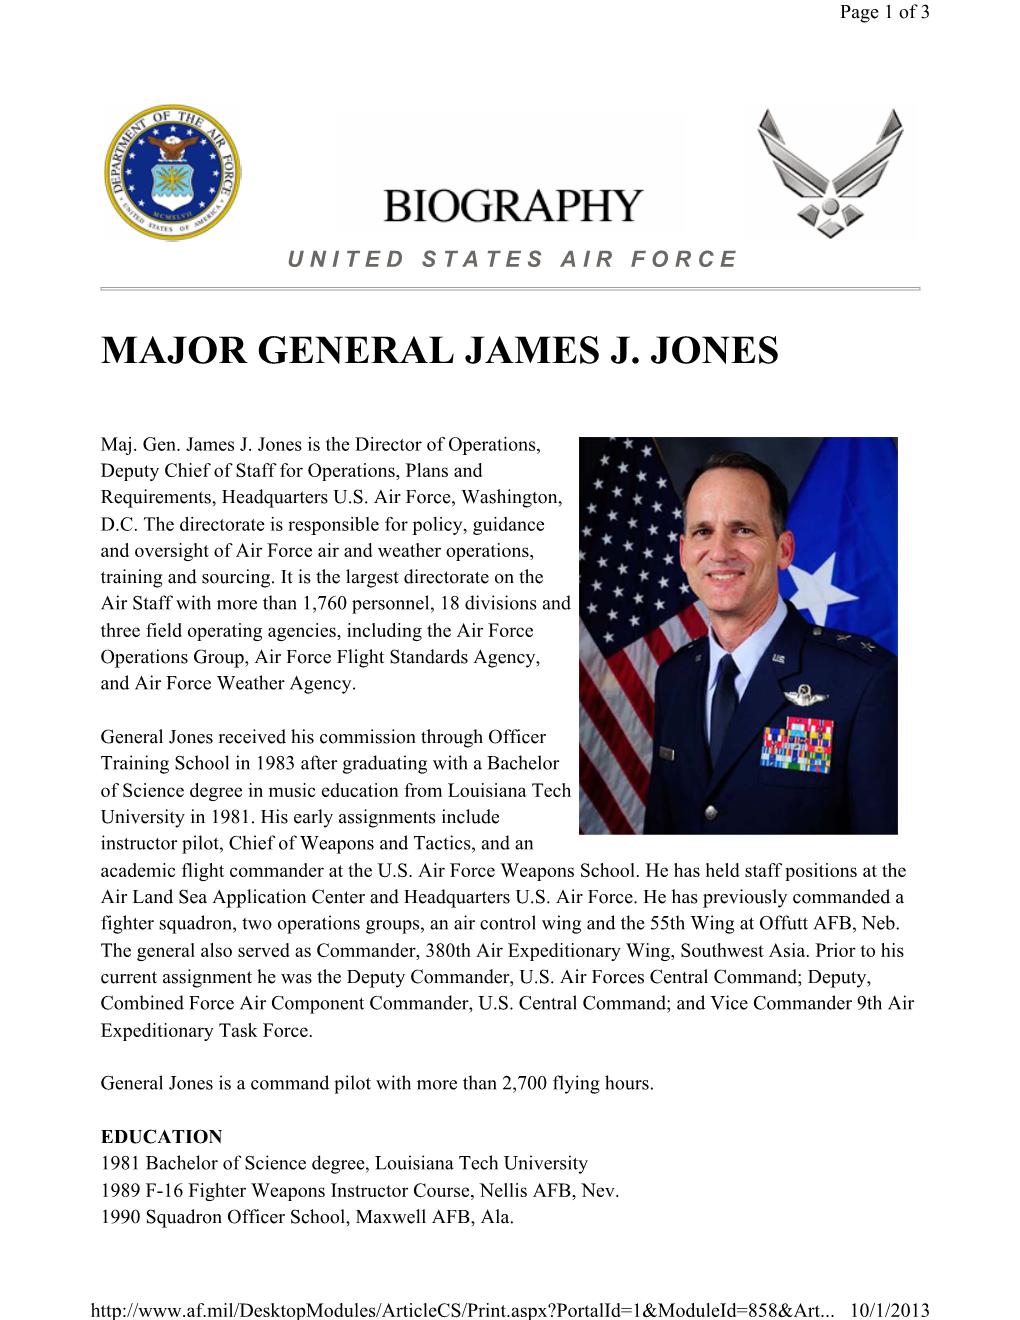 Major General James J. Jones